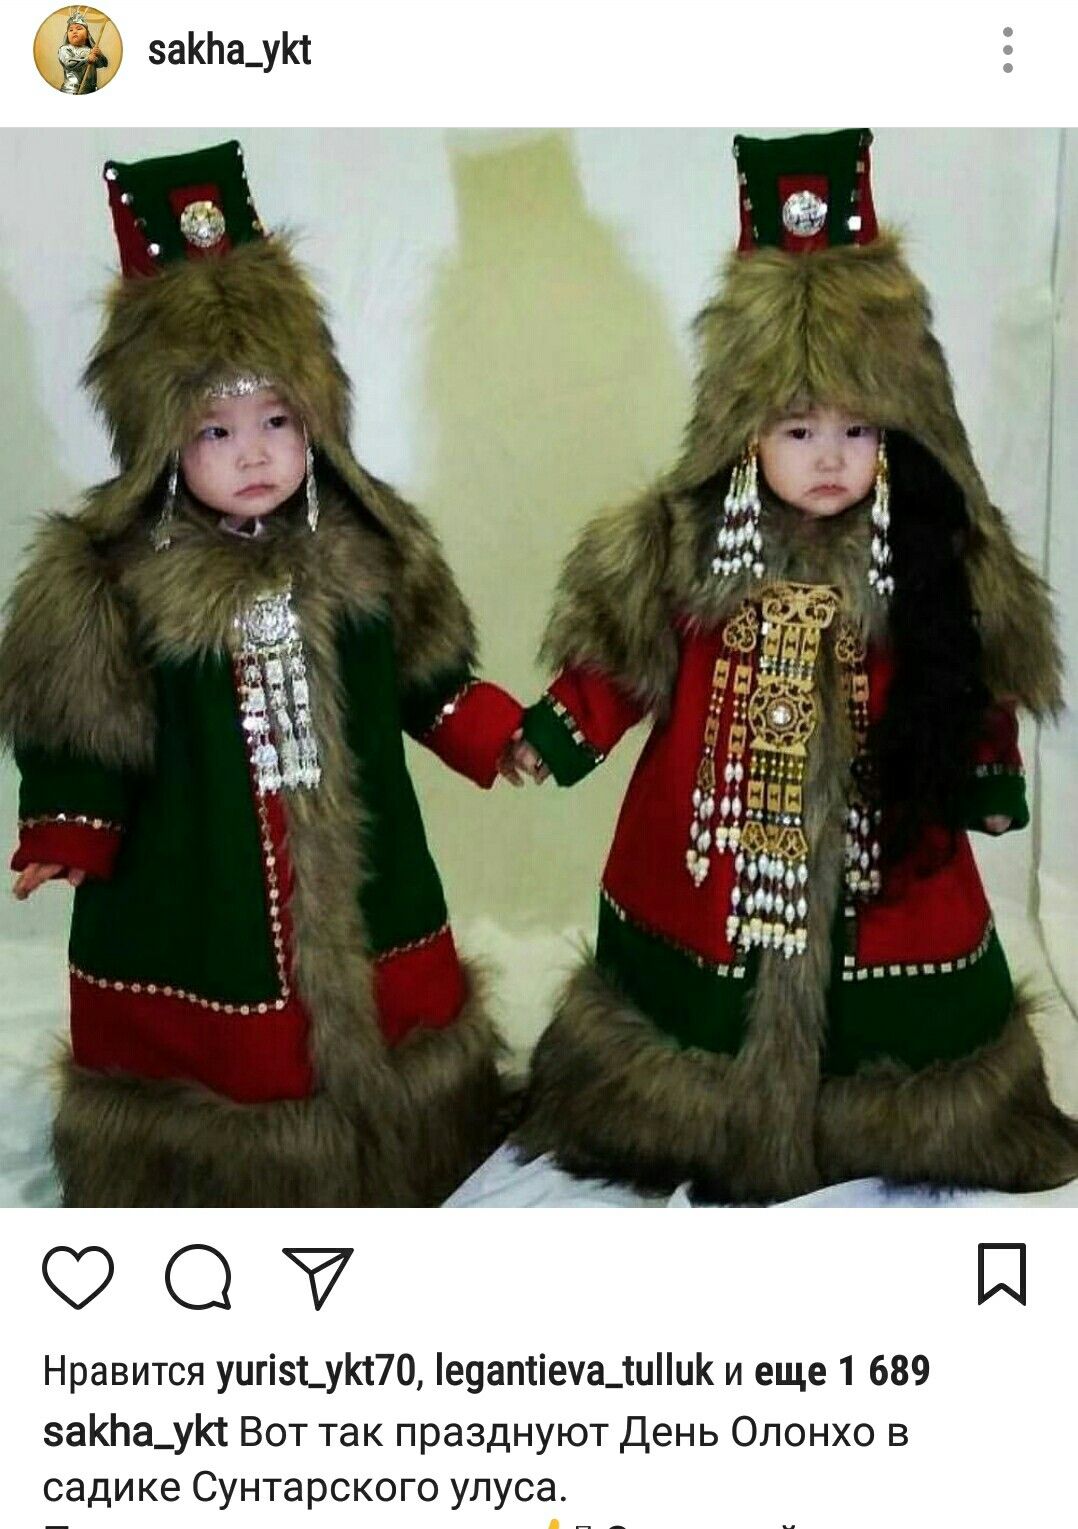 Якутский национальный костюм шаманки